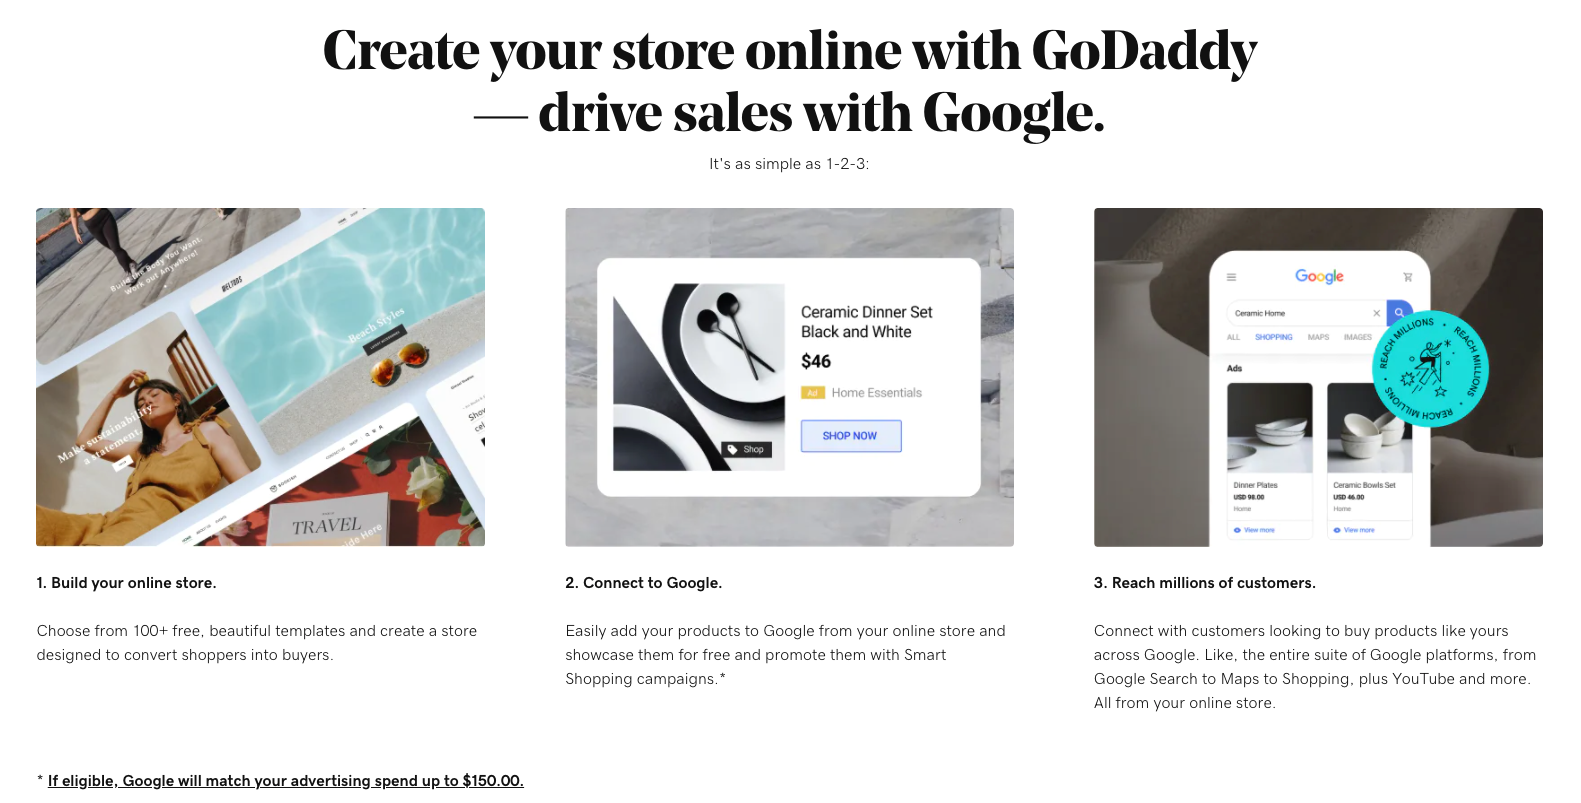 Скриншот рекламного экрана, показывающий преимущества и простоту подключения к Google Покупкам